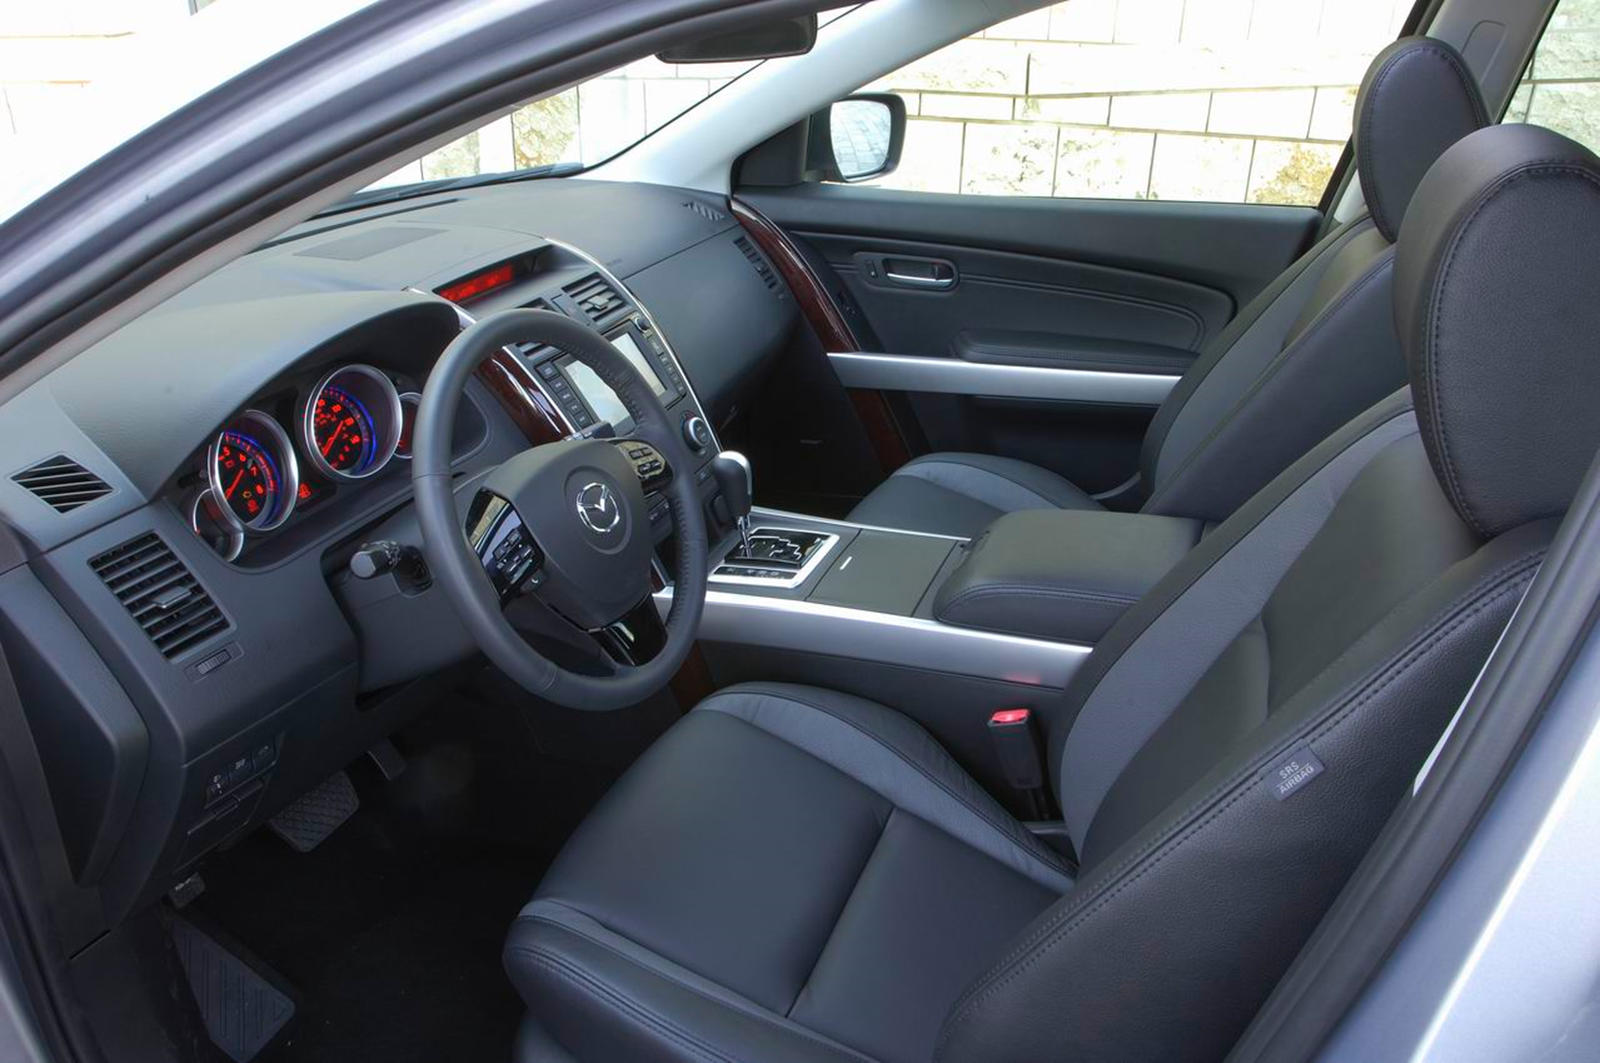 2009 Mazda CX-9 Interior Photos | CarBuzz